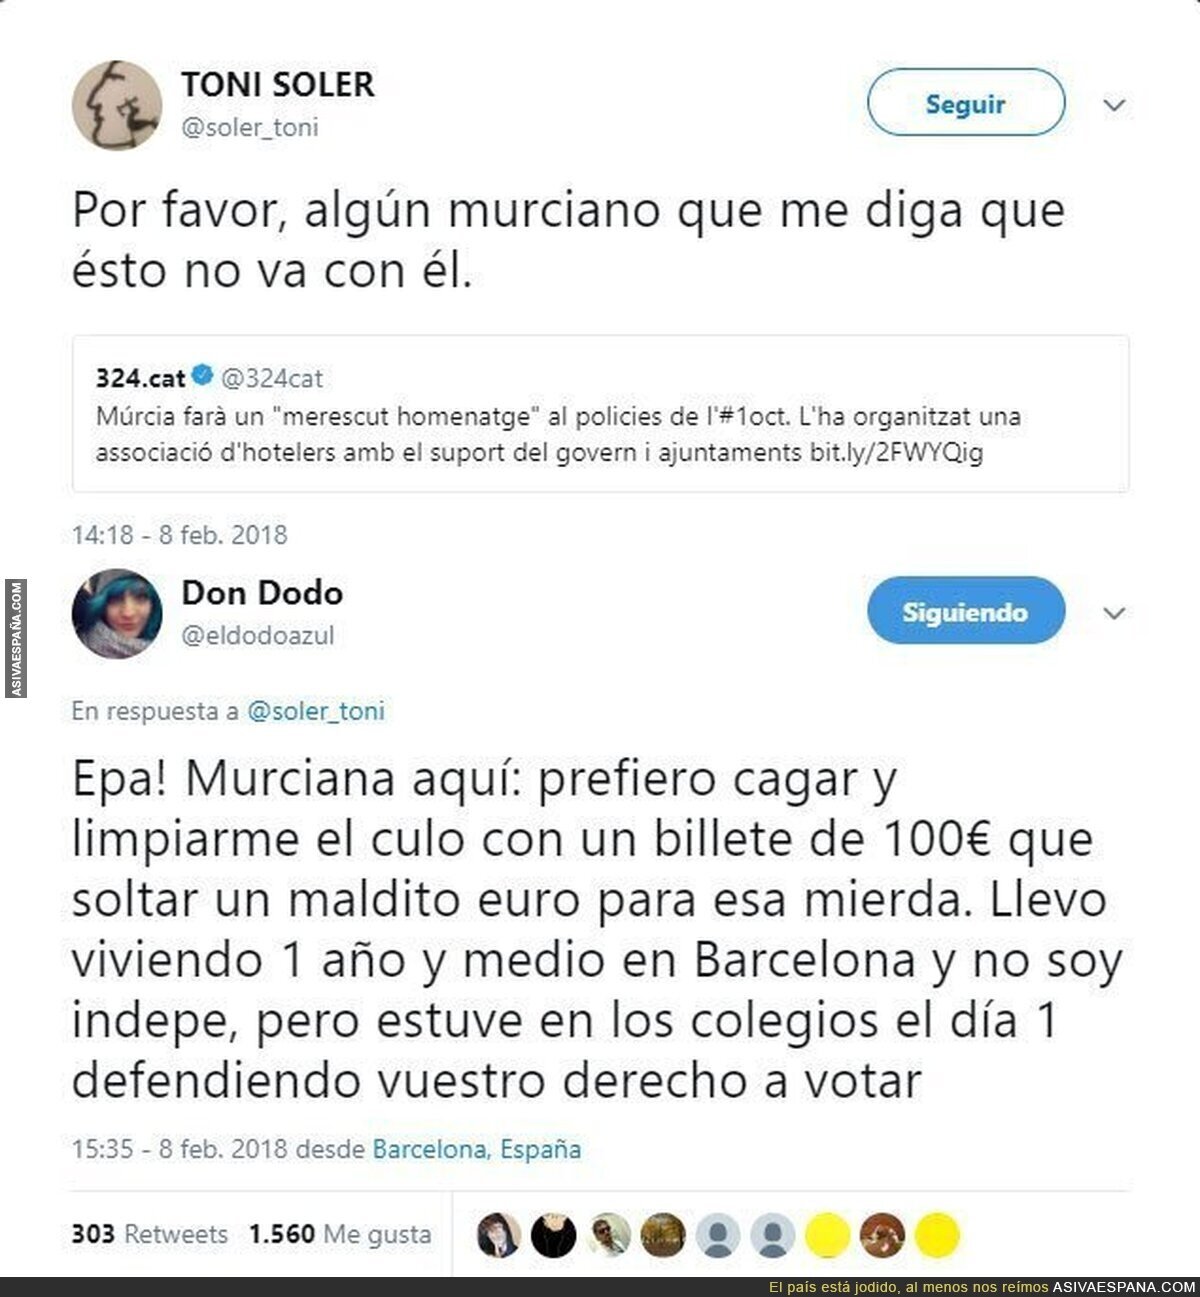 Murcia hace un homenaje a los policías del 1O y una chicia murciana da una lección de democracia a todos sus vecinos